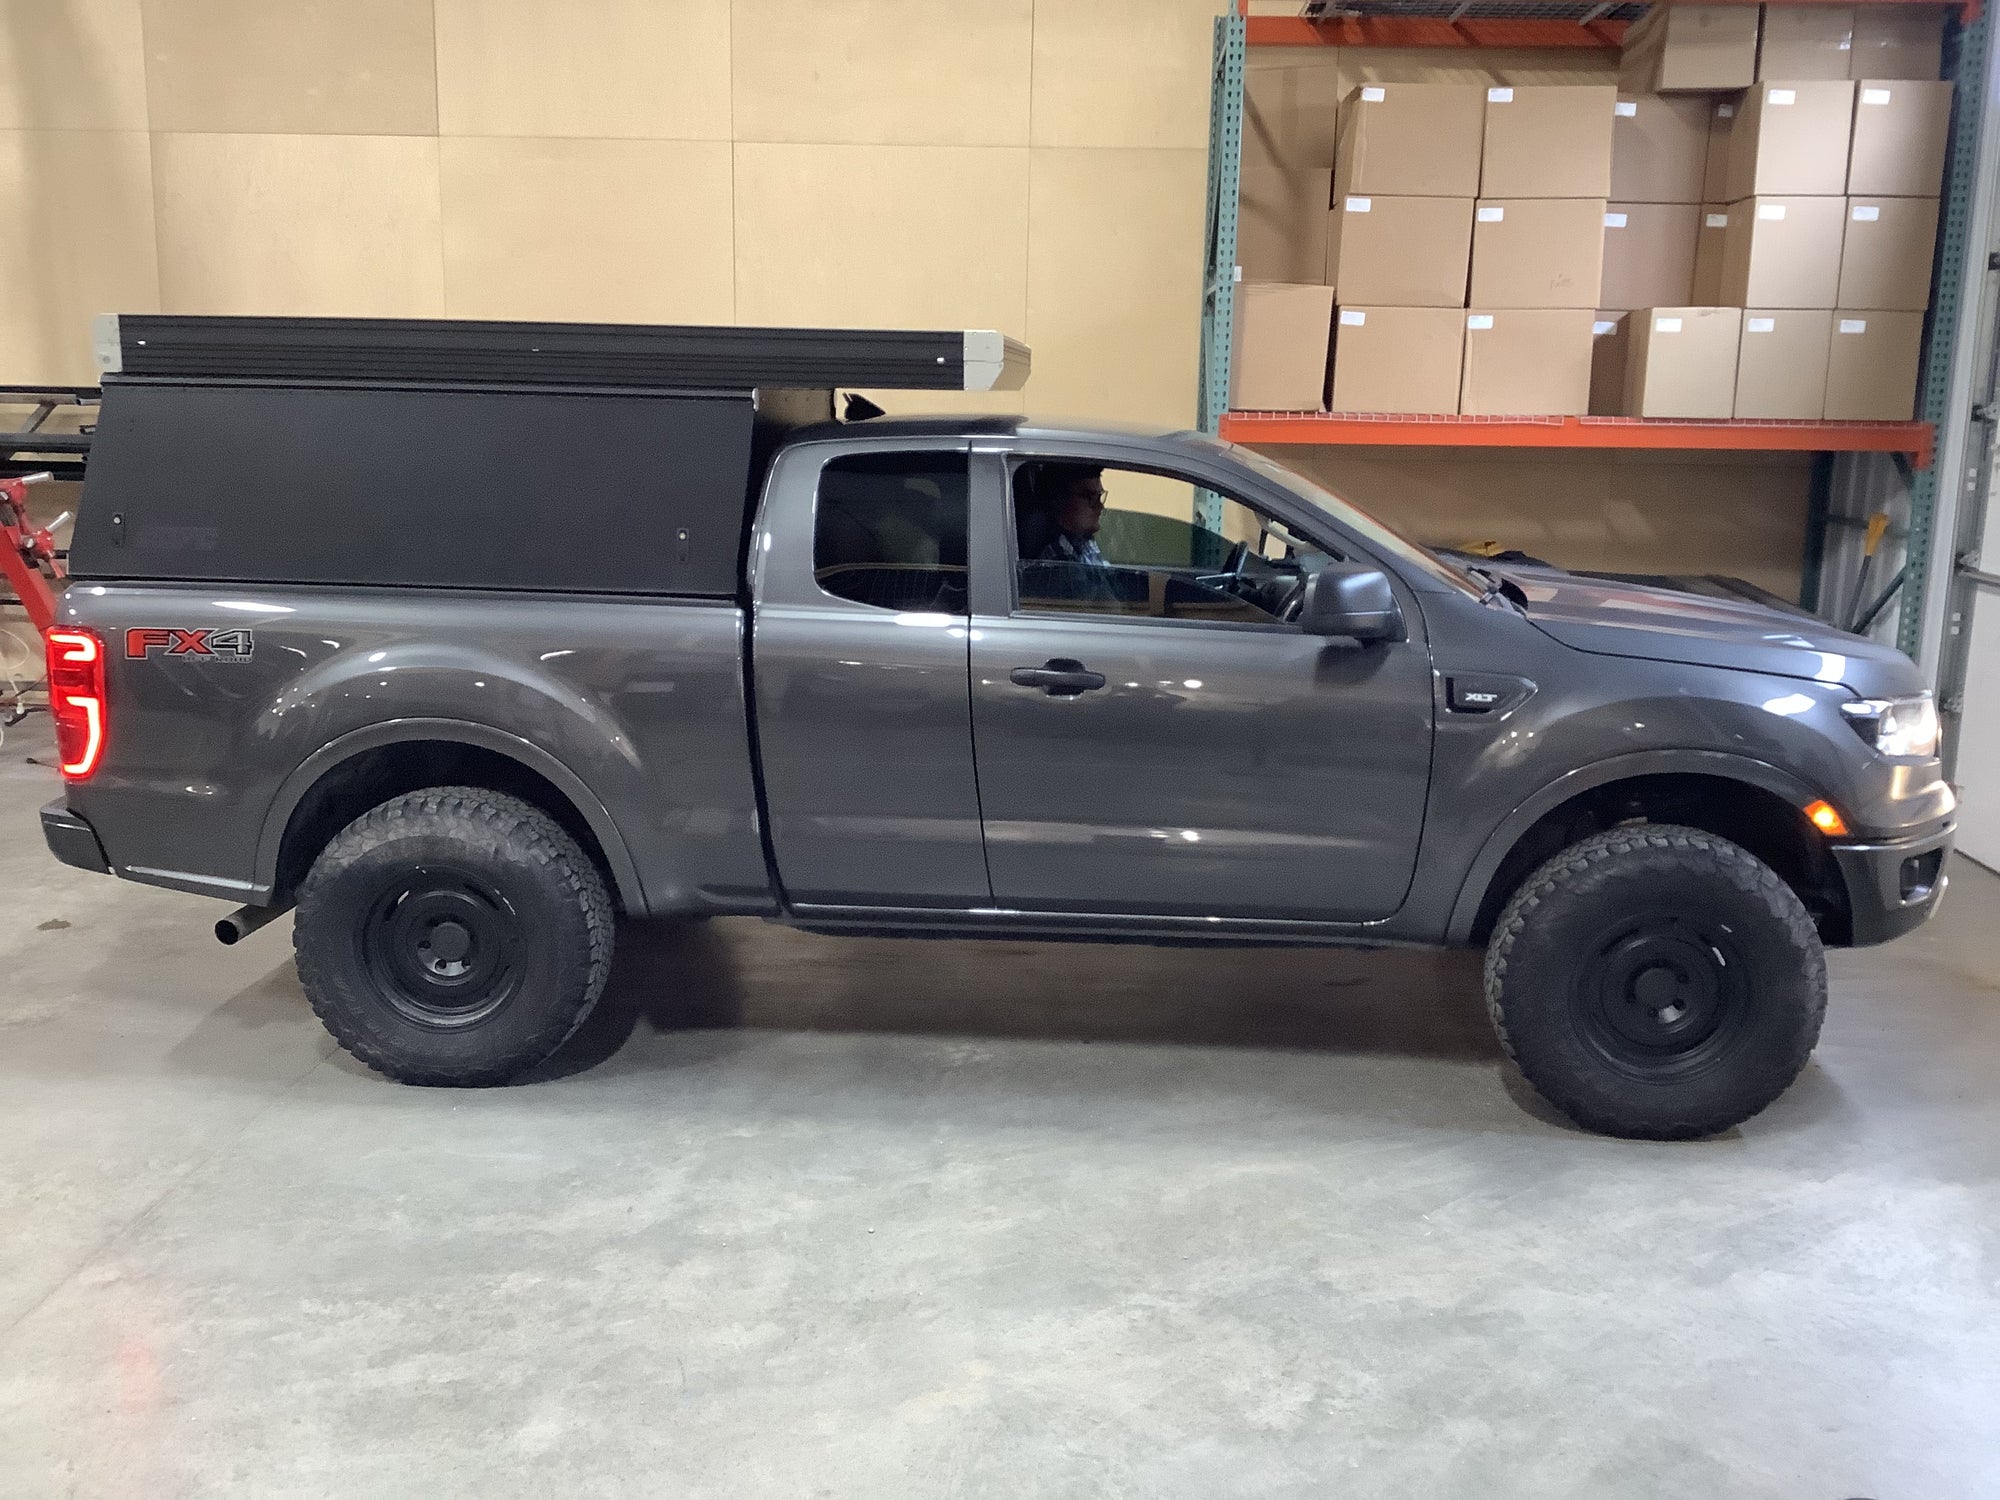 2019 Ford Ranger Camper - Build #3108